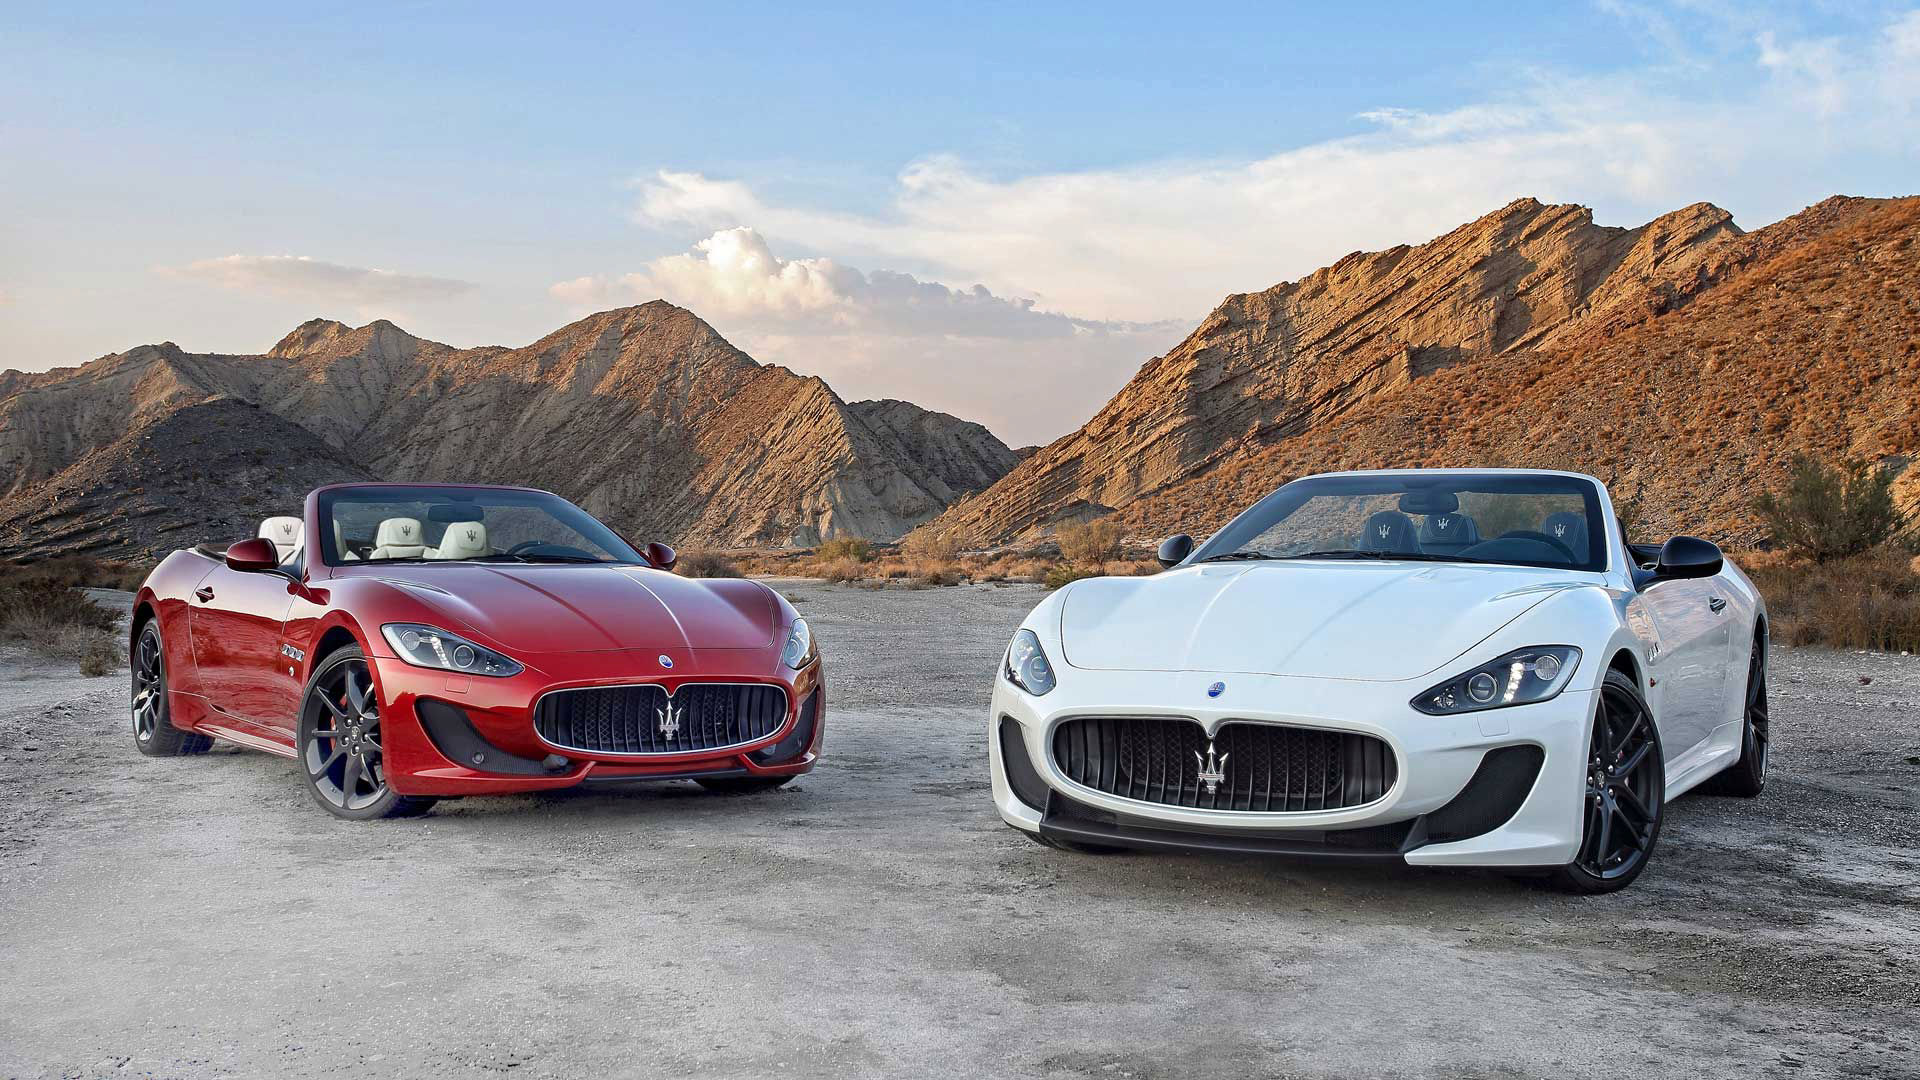 Dos descapotables Maserati en montaña